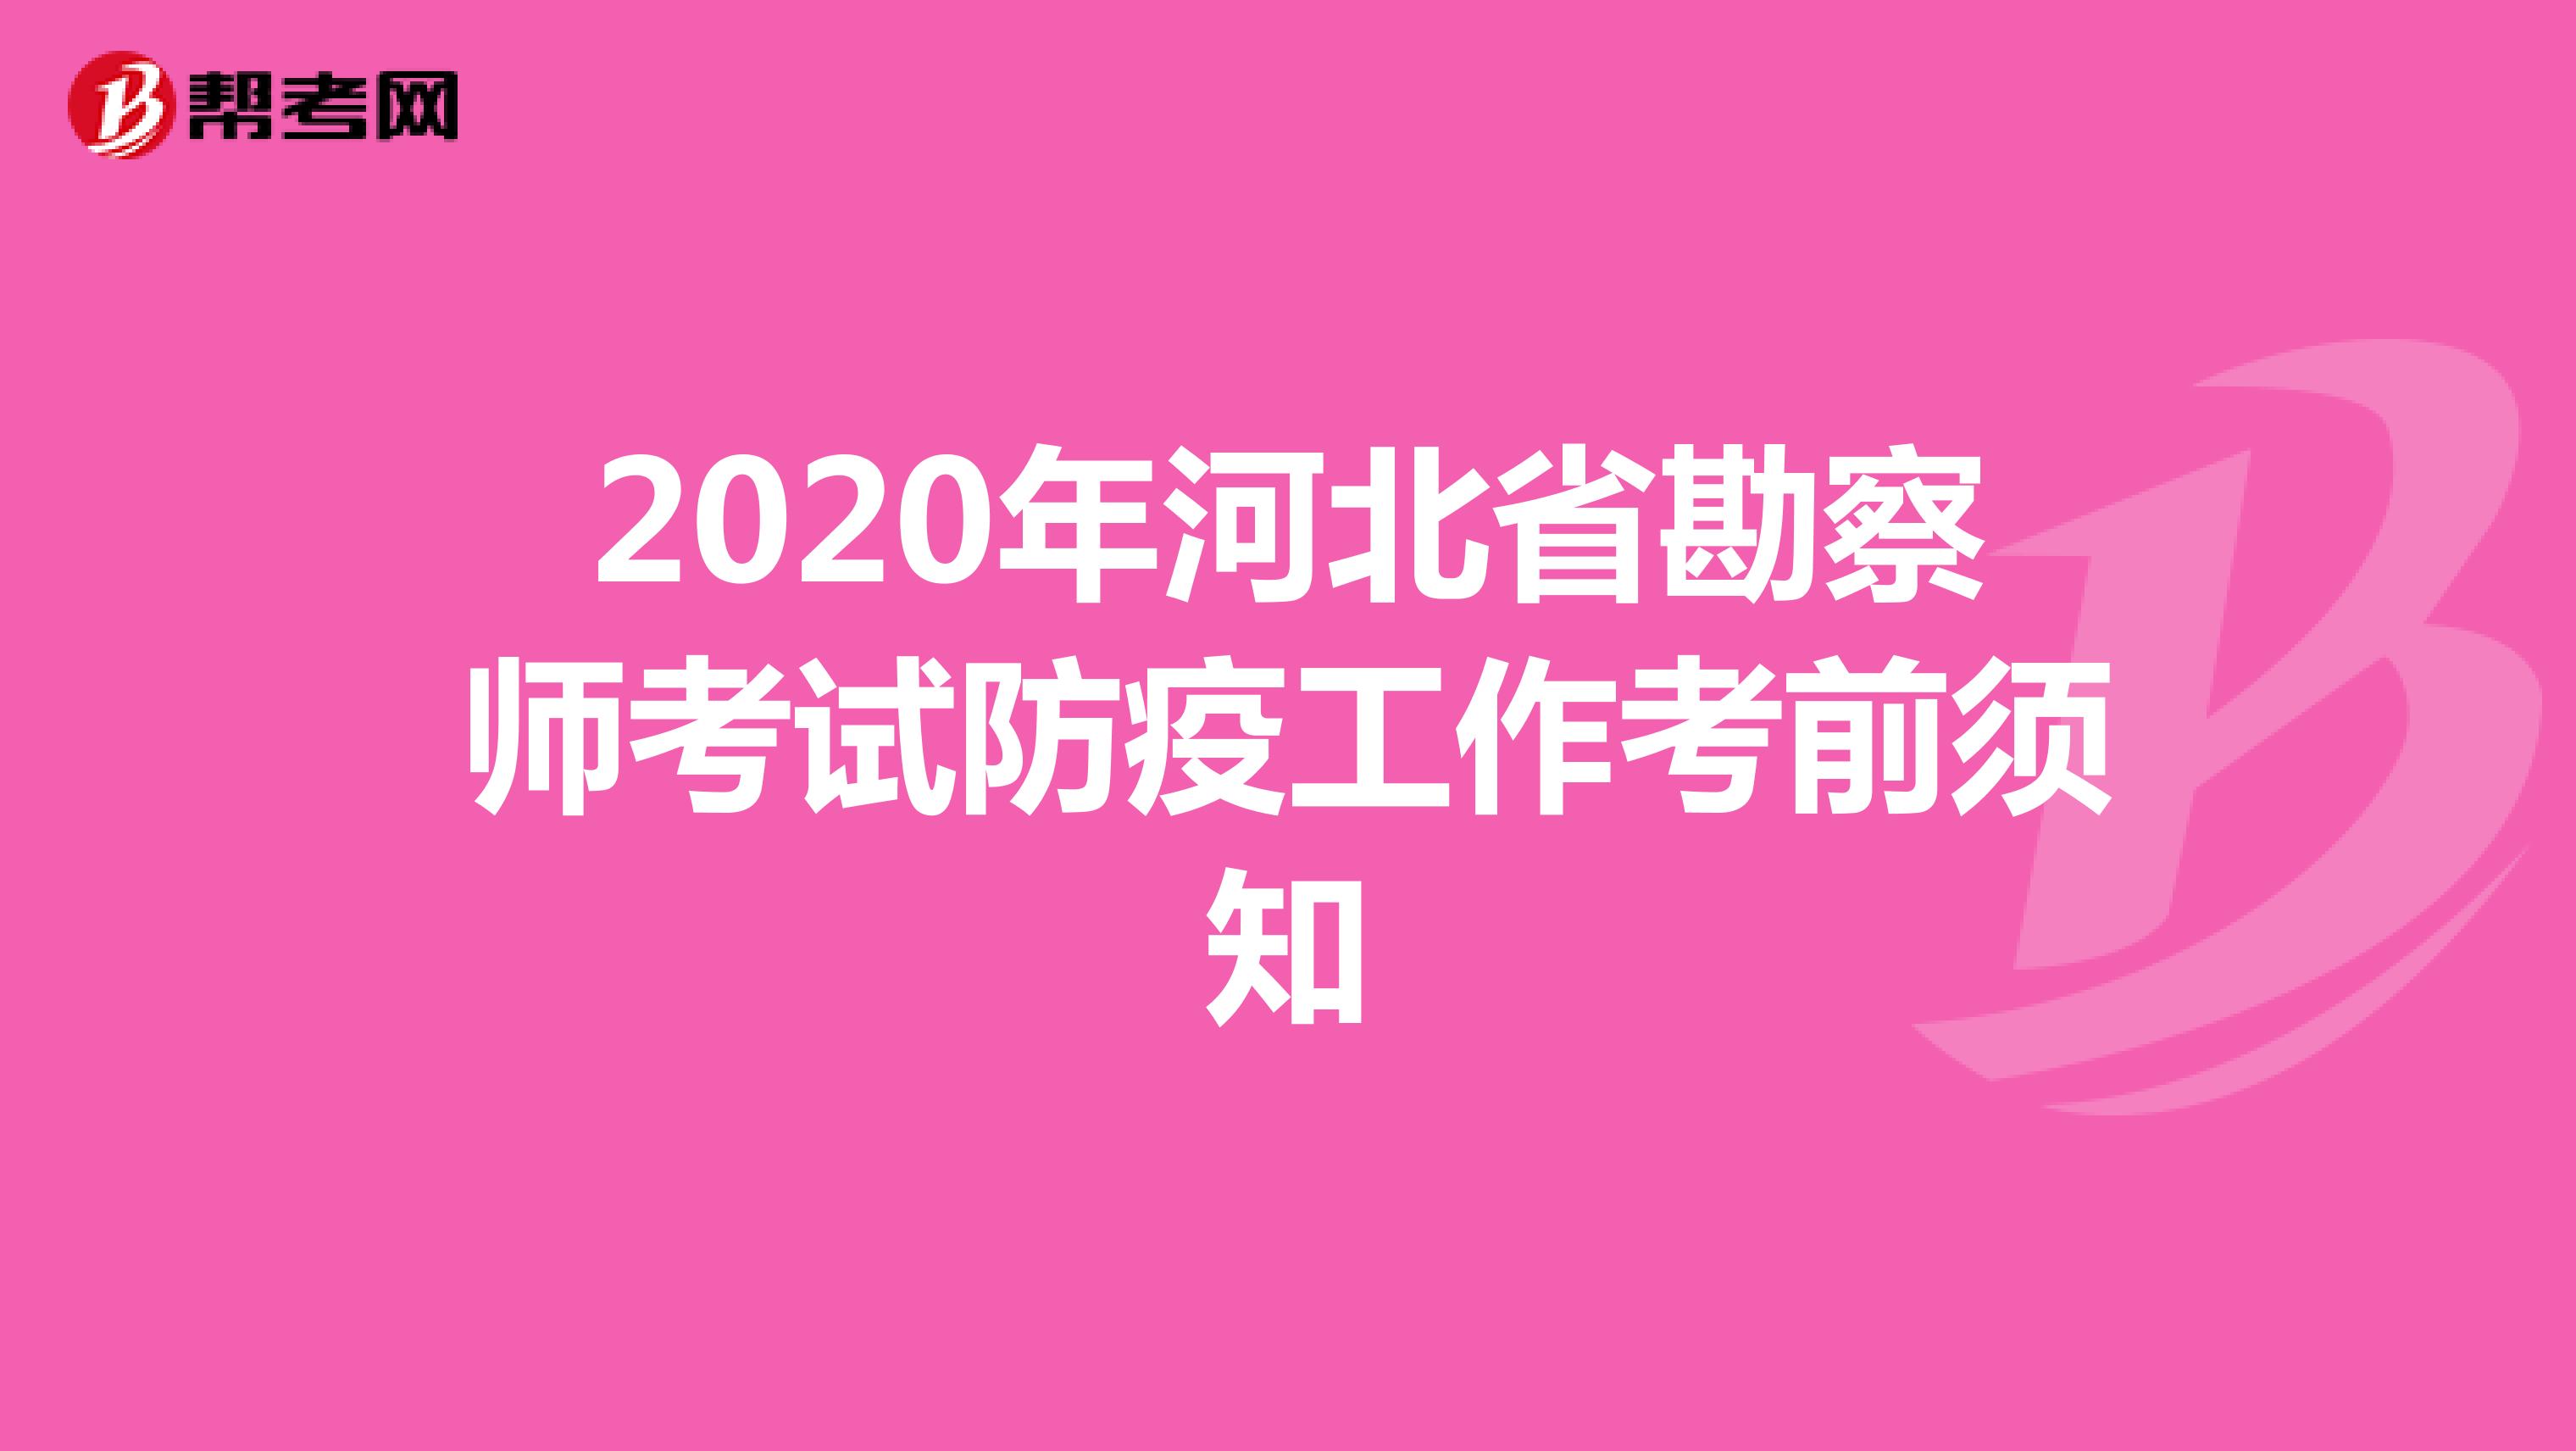 2020年河北省勘察师考试防疫工作考前须知